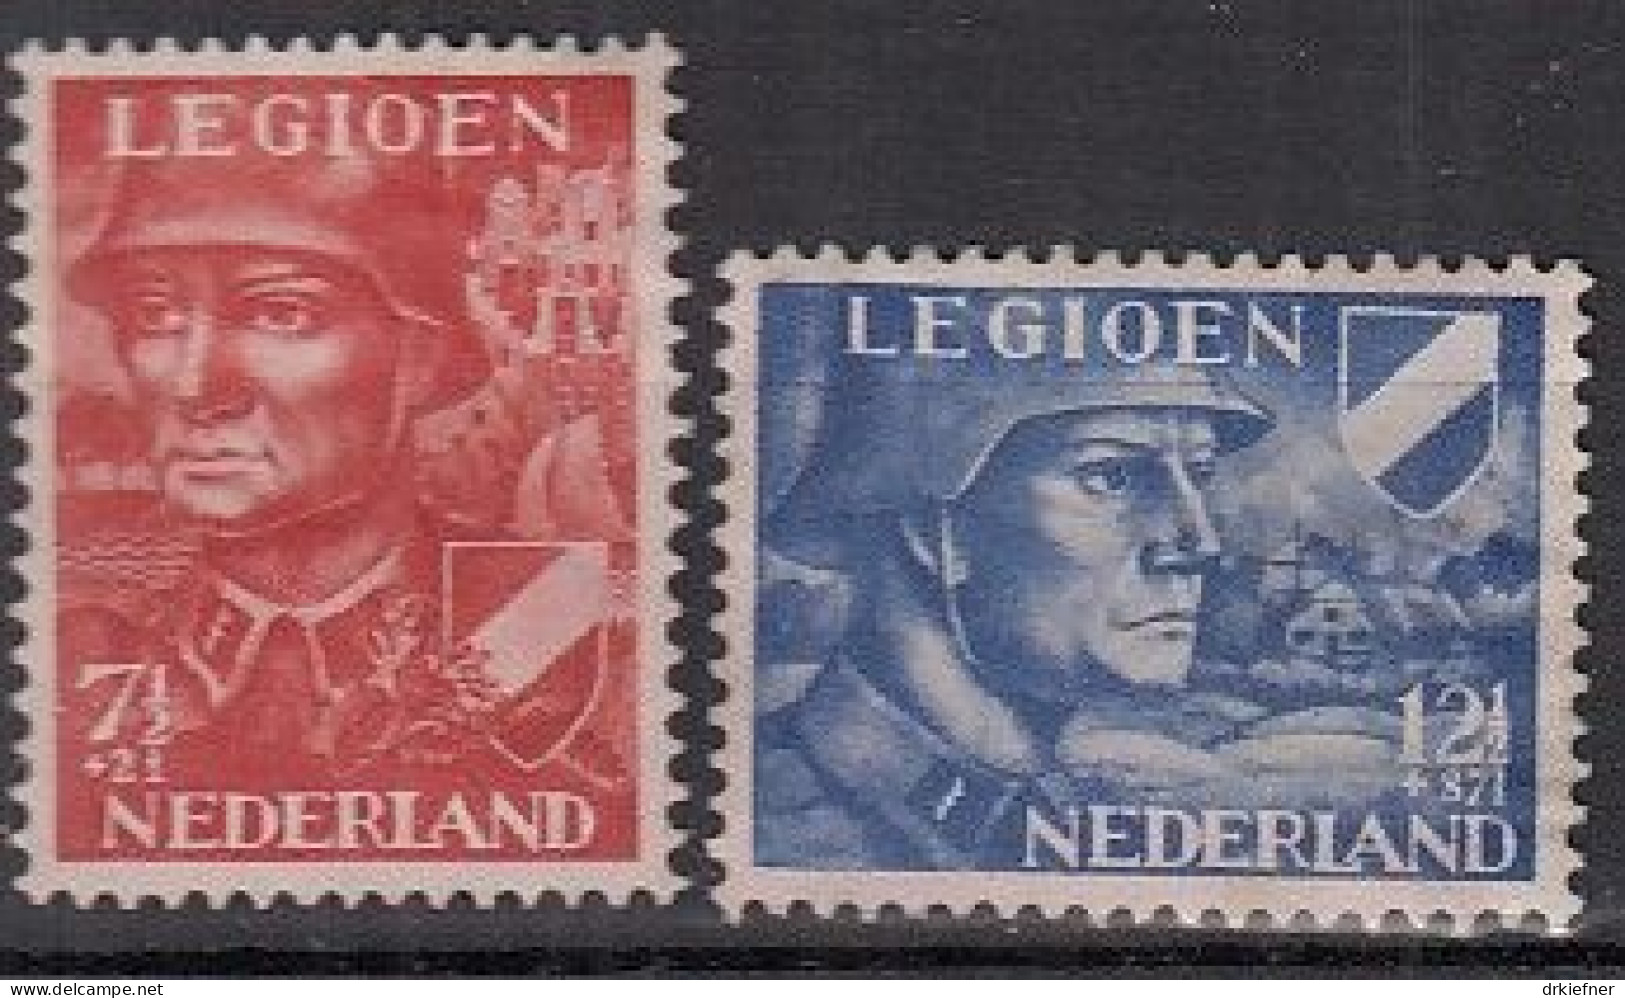 NIEDERLANDE 402-403, Postfrisch **, Niederländische Legion, 1942 - Ongebruikt